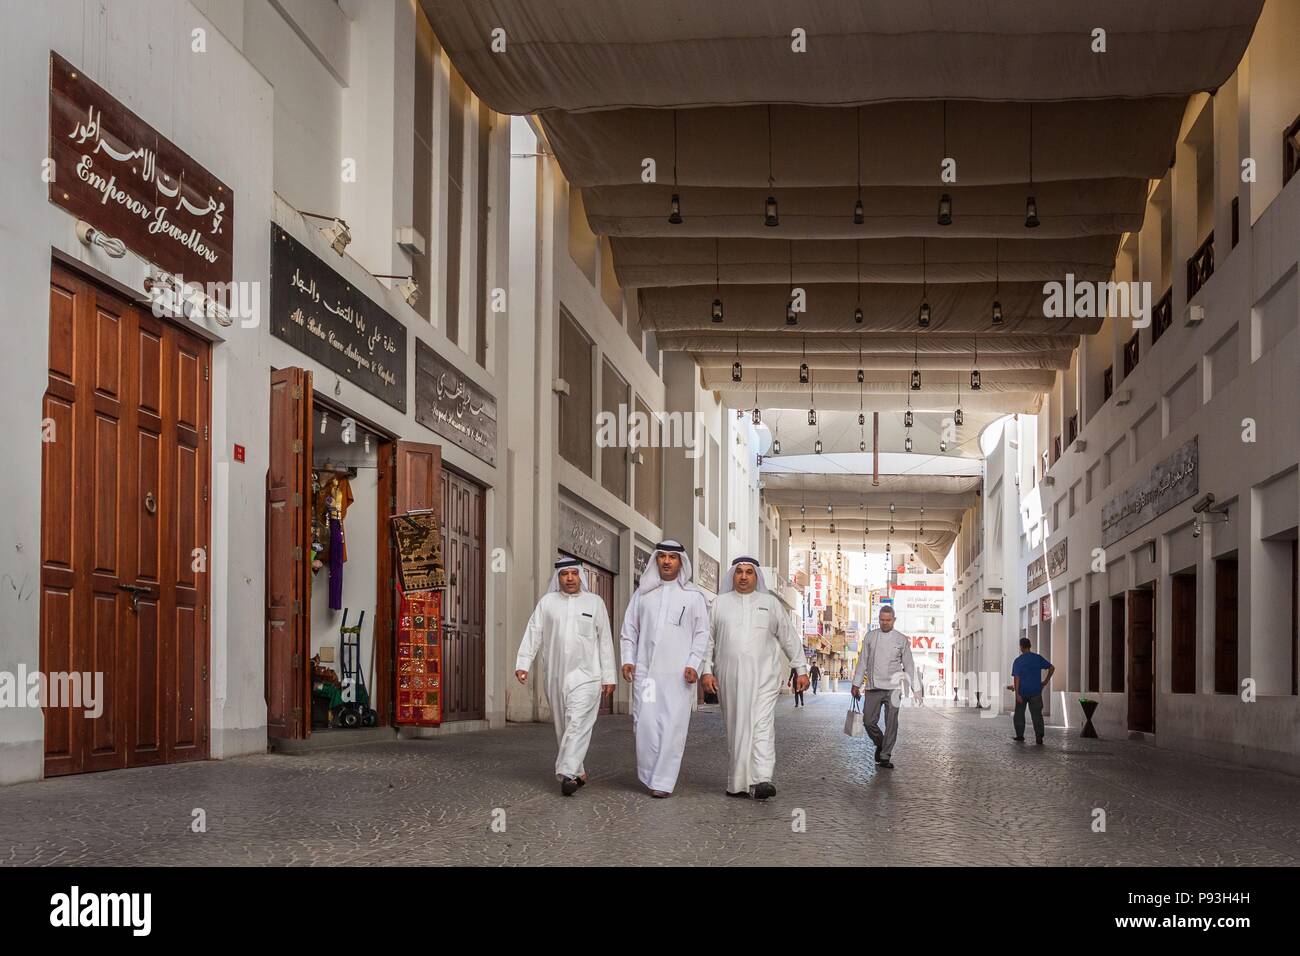 Regno del Bahrein, Golfo Persico, MEDIO ORIENTE Foto Stock